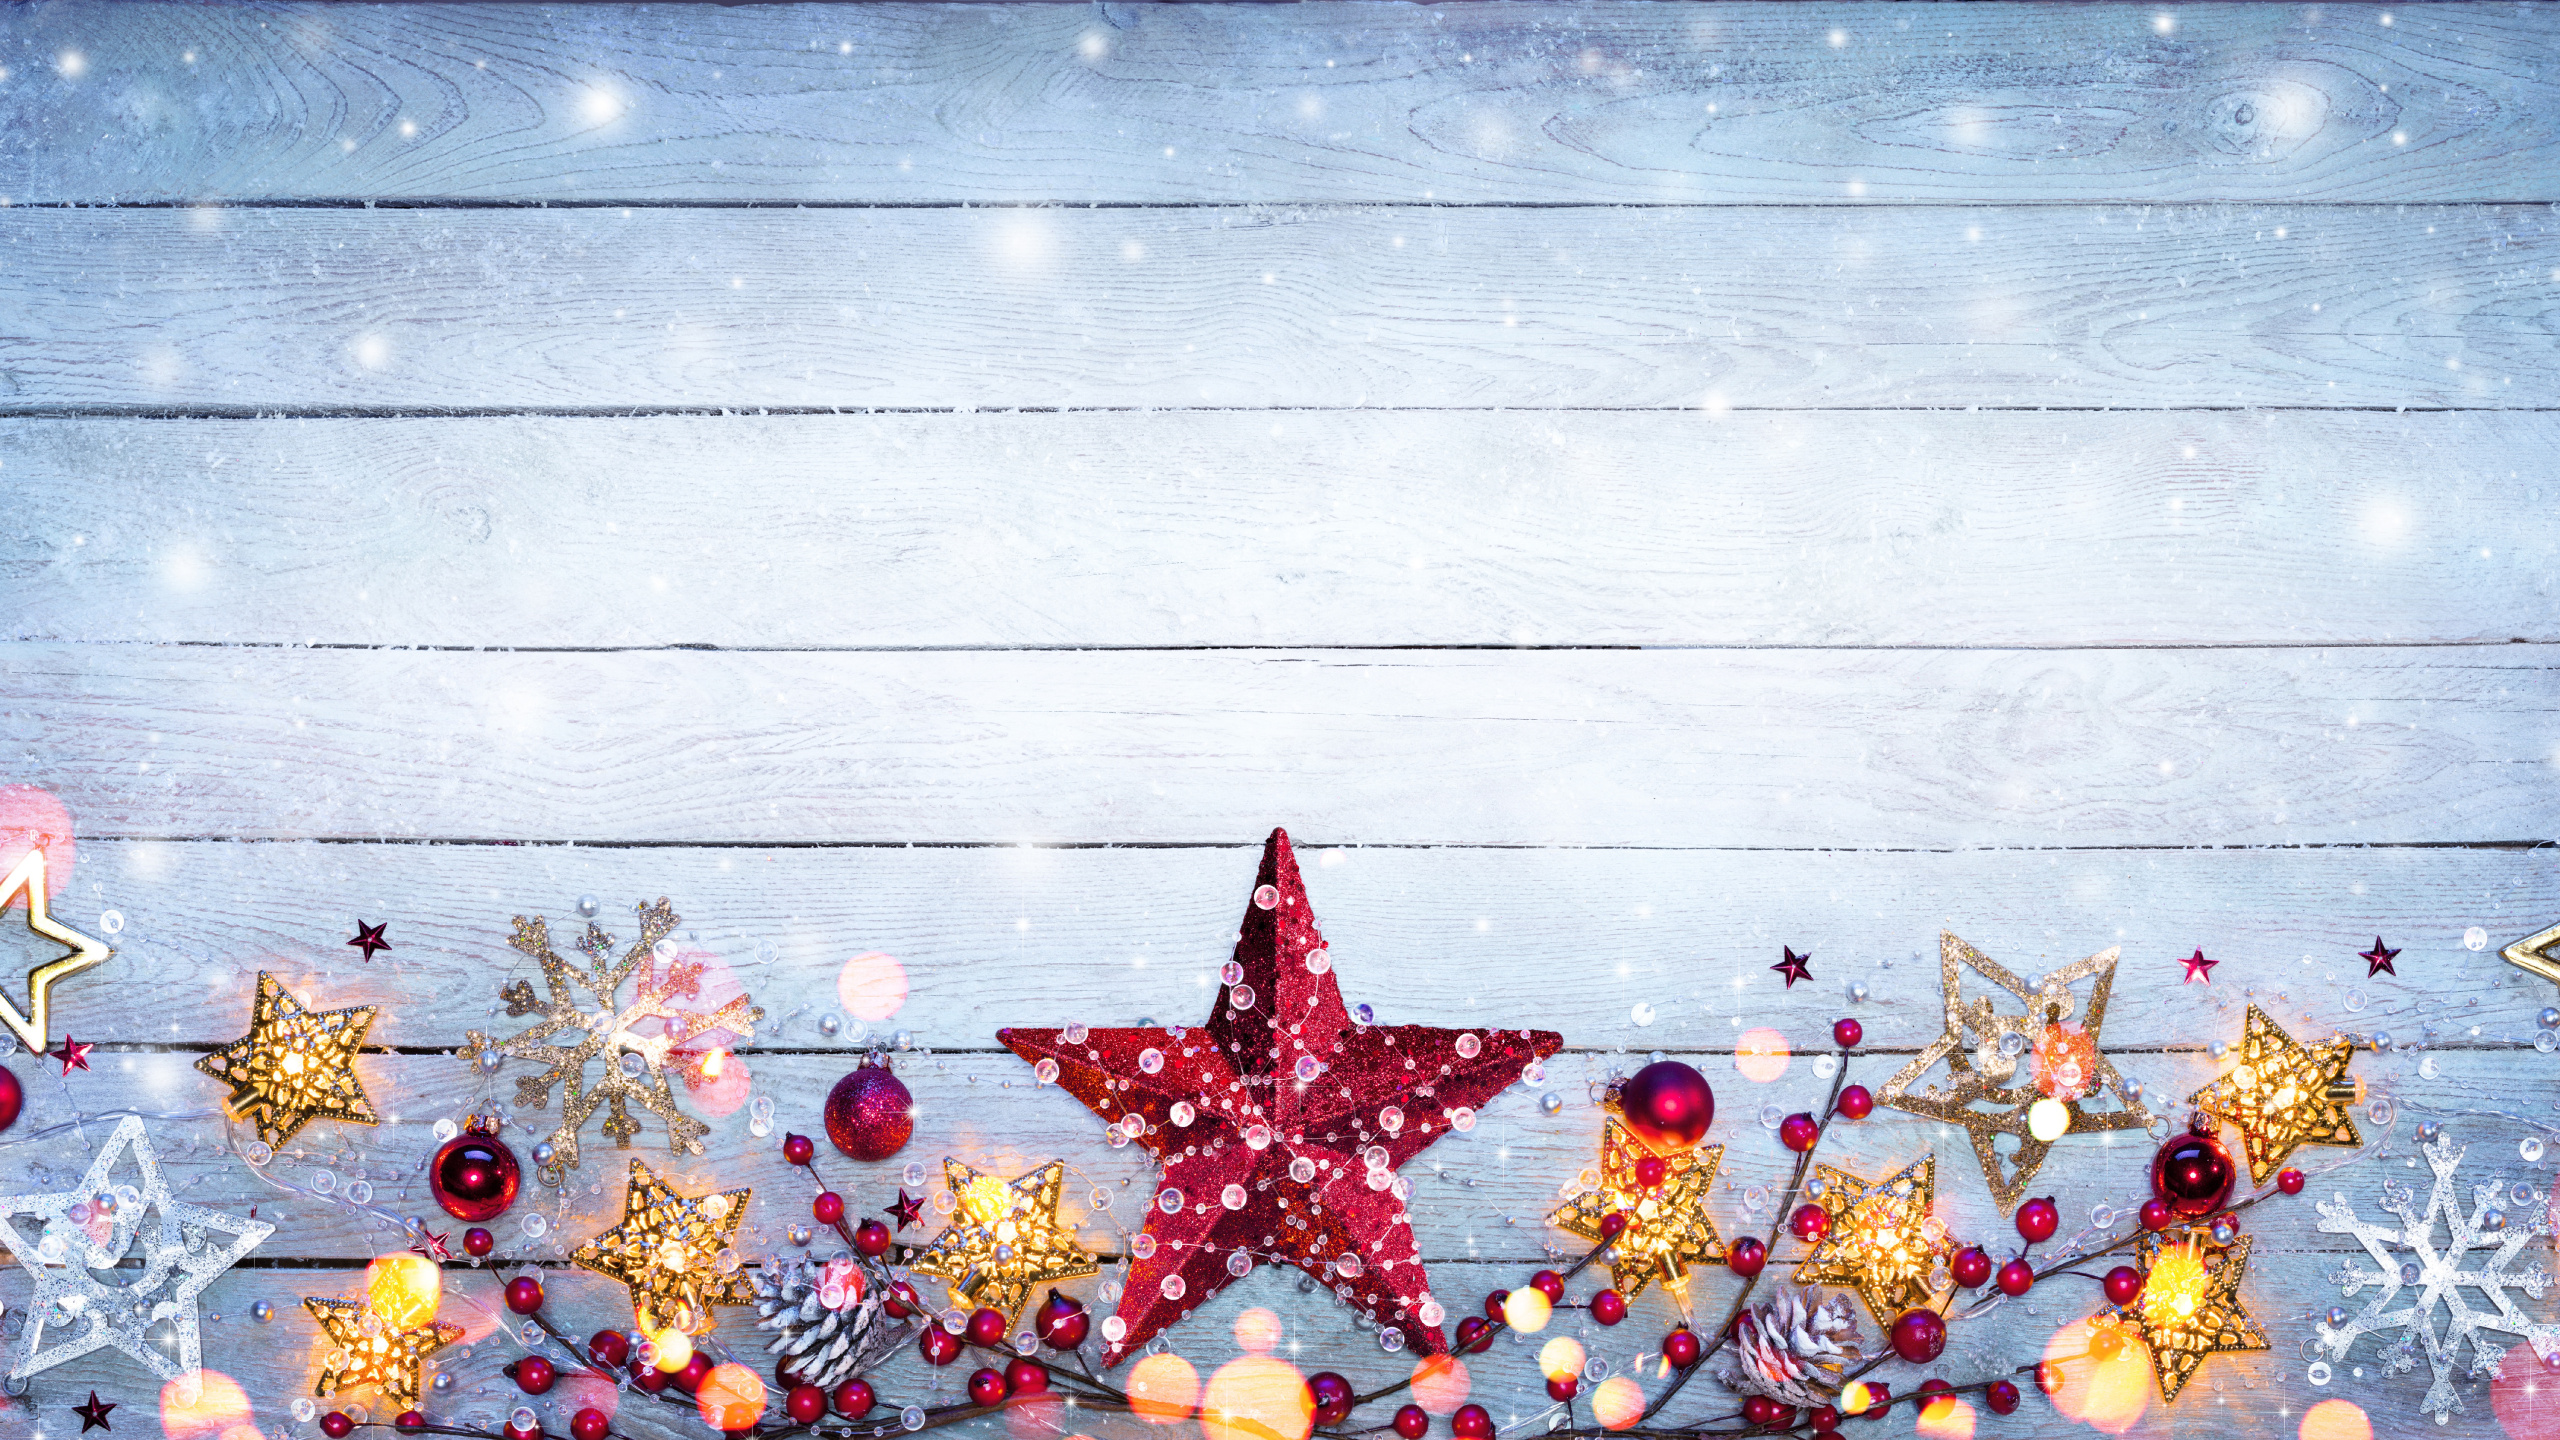 Weihnachtsdekoration, Weihnachten, Christmas Ornament, Weihnachtsbaum, Fir. Wallpaper in 2560x1440 Resolution